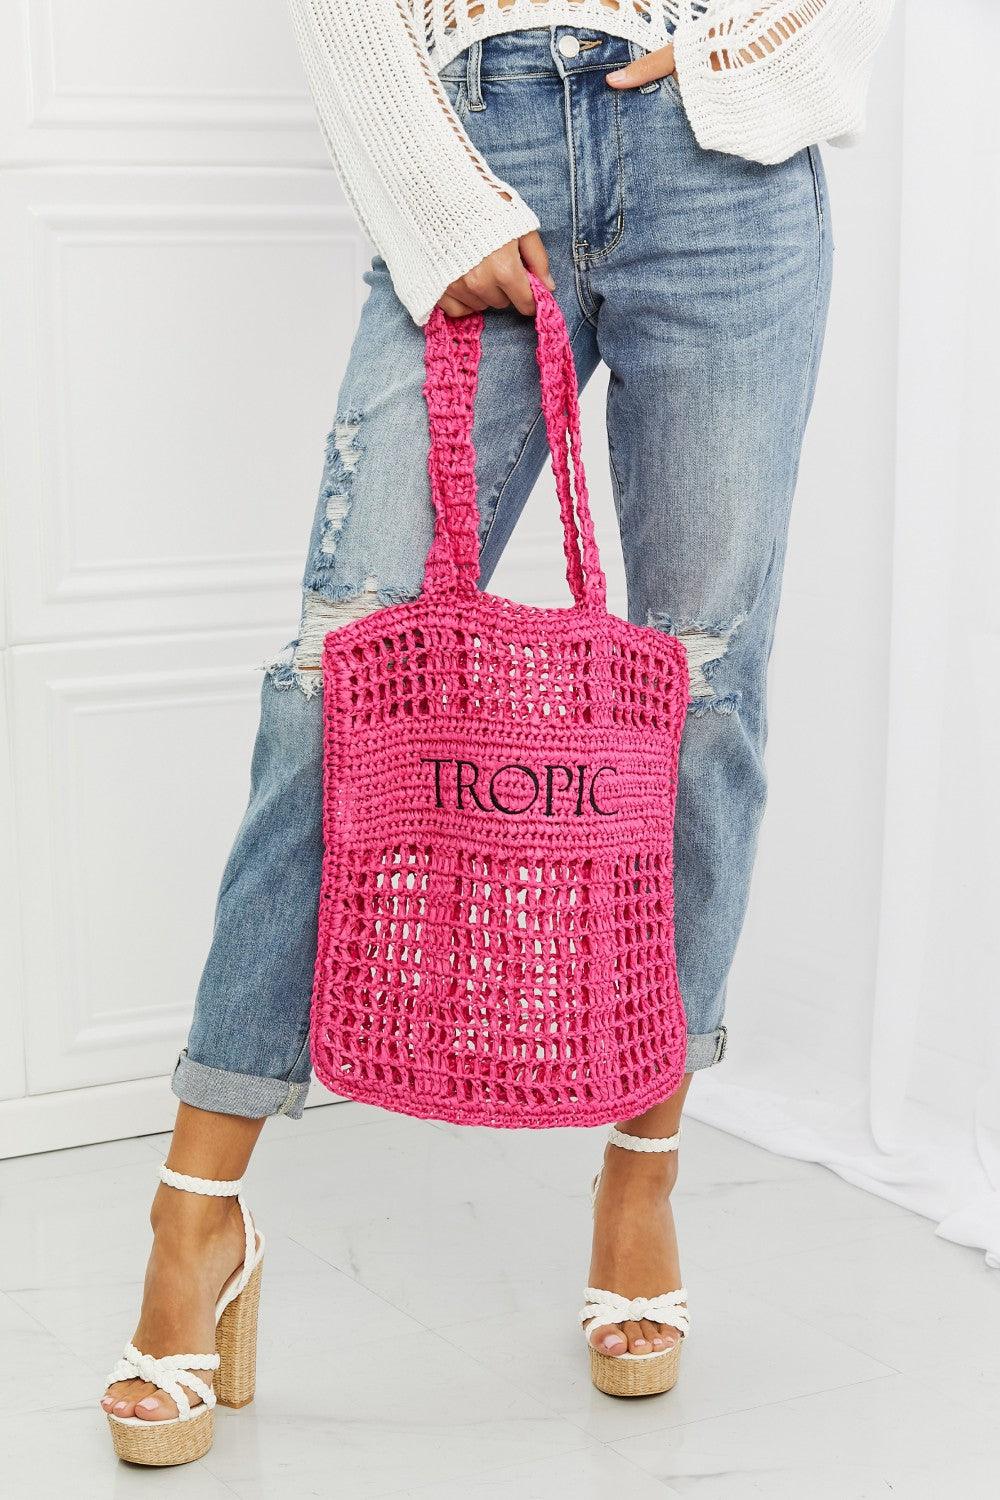 Fame Tropic Babe Staw Tote Bag - Lab Fashion, Home & Health